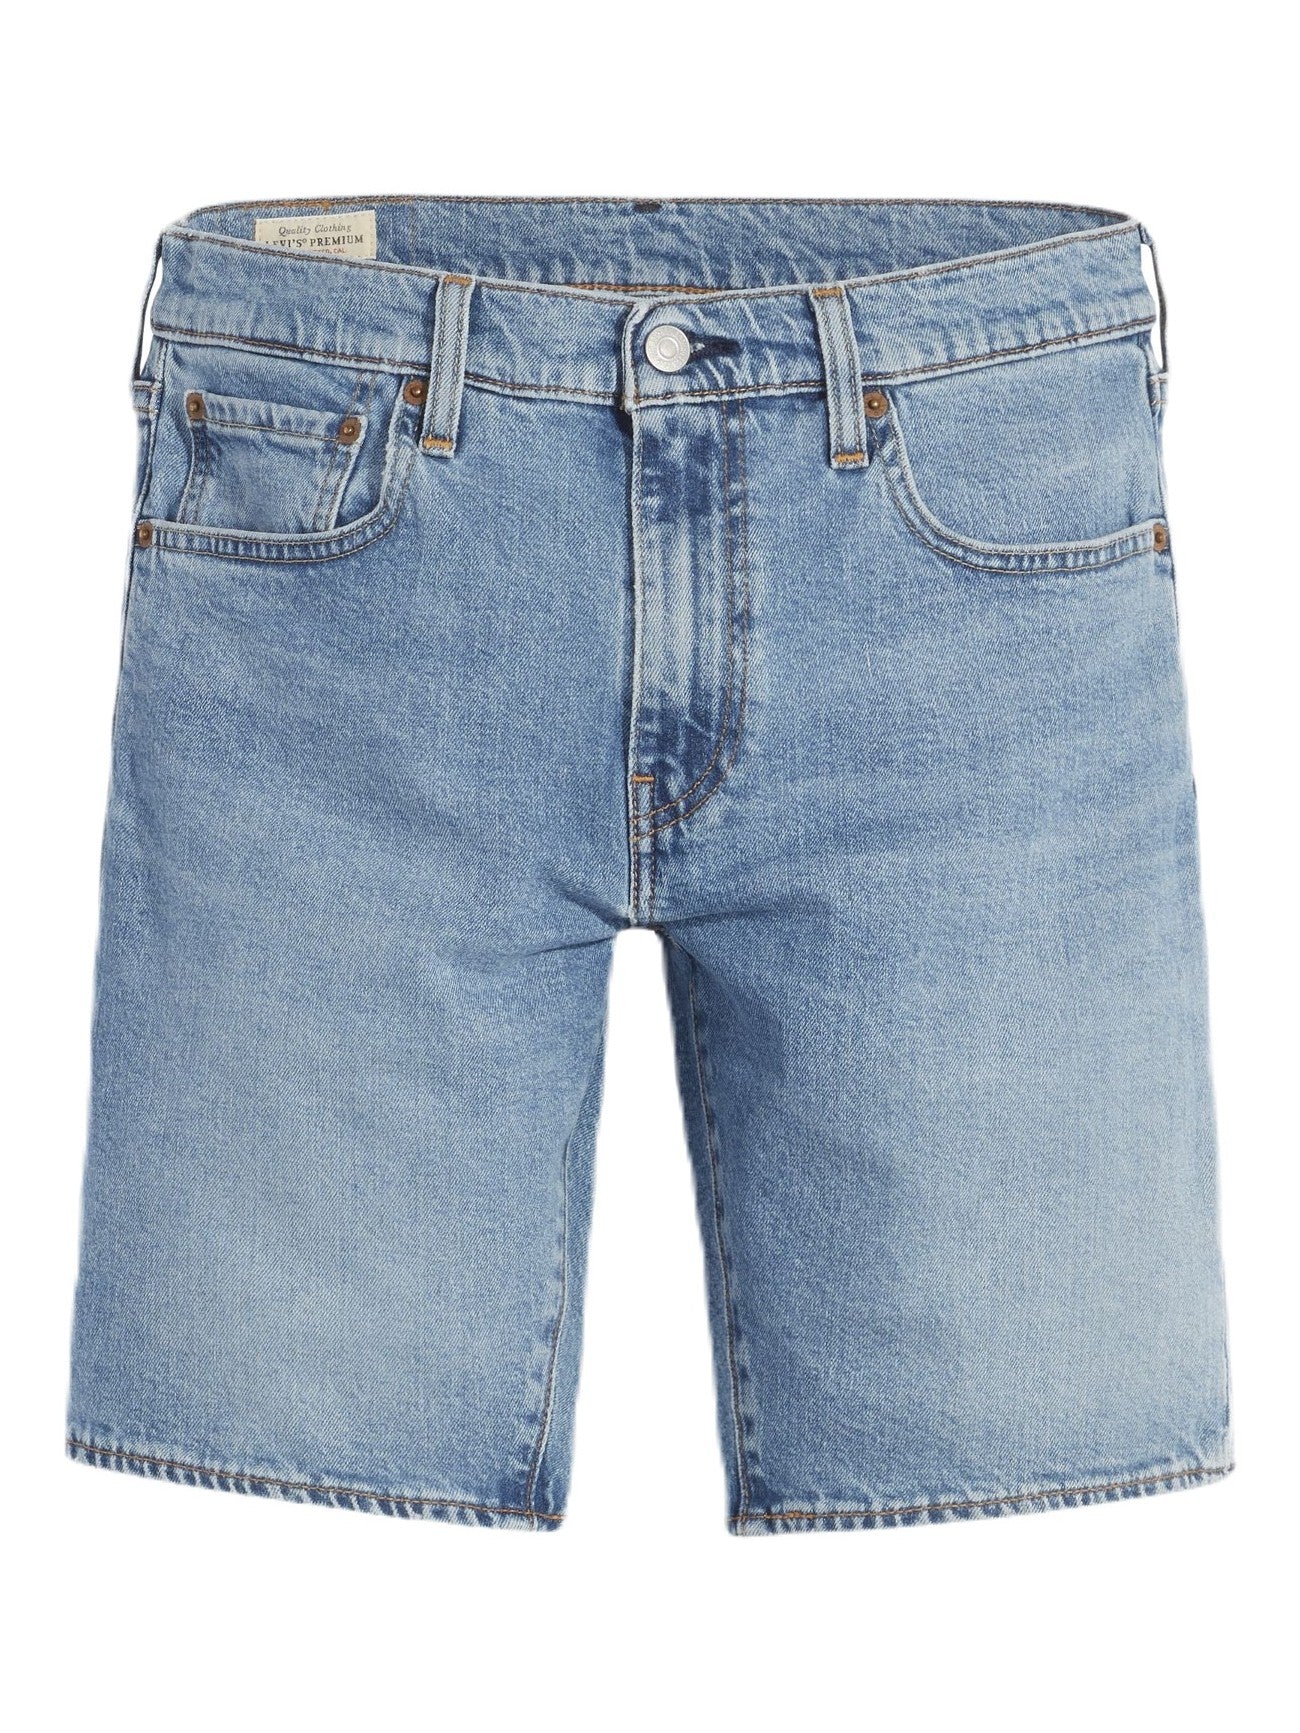 Levi's - 412 Slim Short - Terri Blue Key Adv Short – 88 Jeans